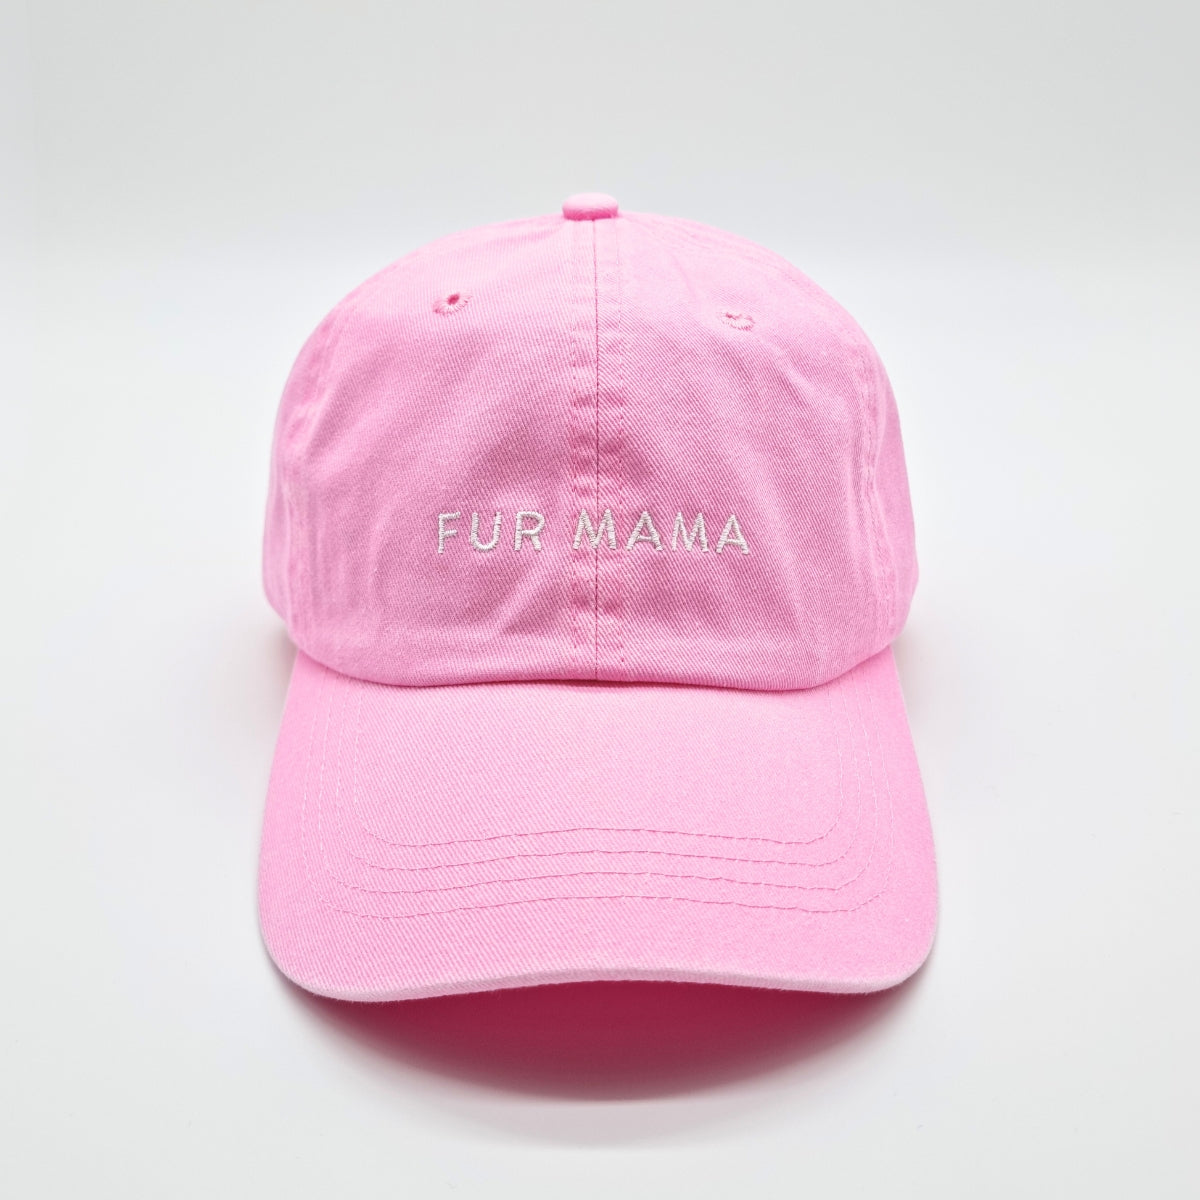 pink-denim-cap-fur-mama-front.jpg